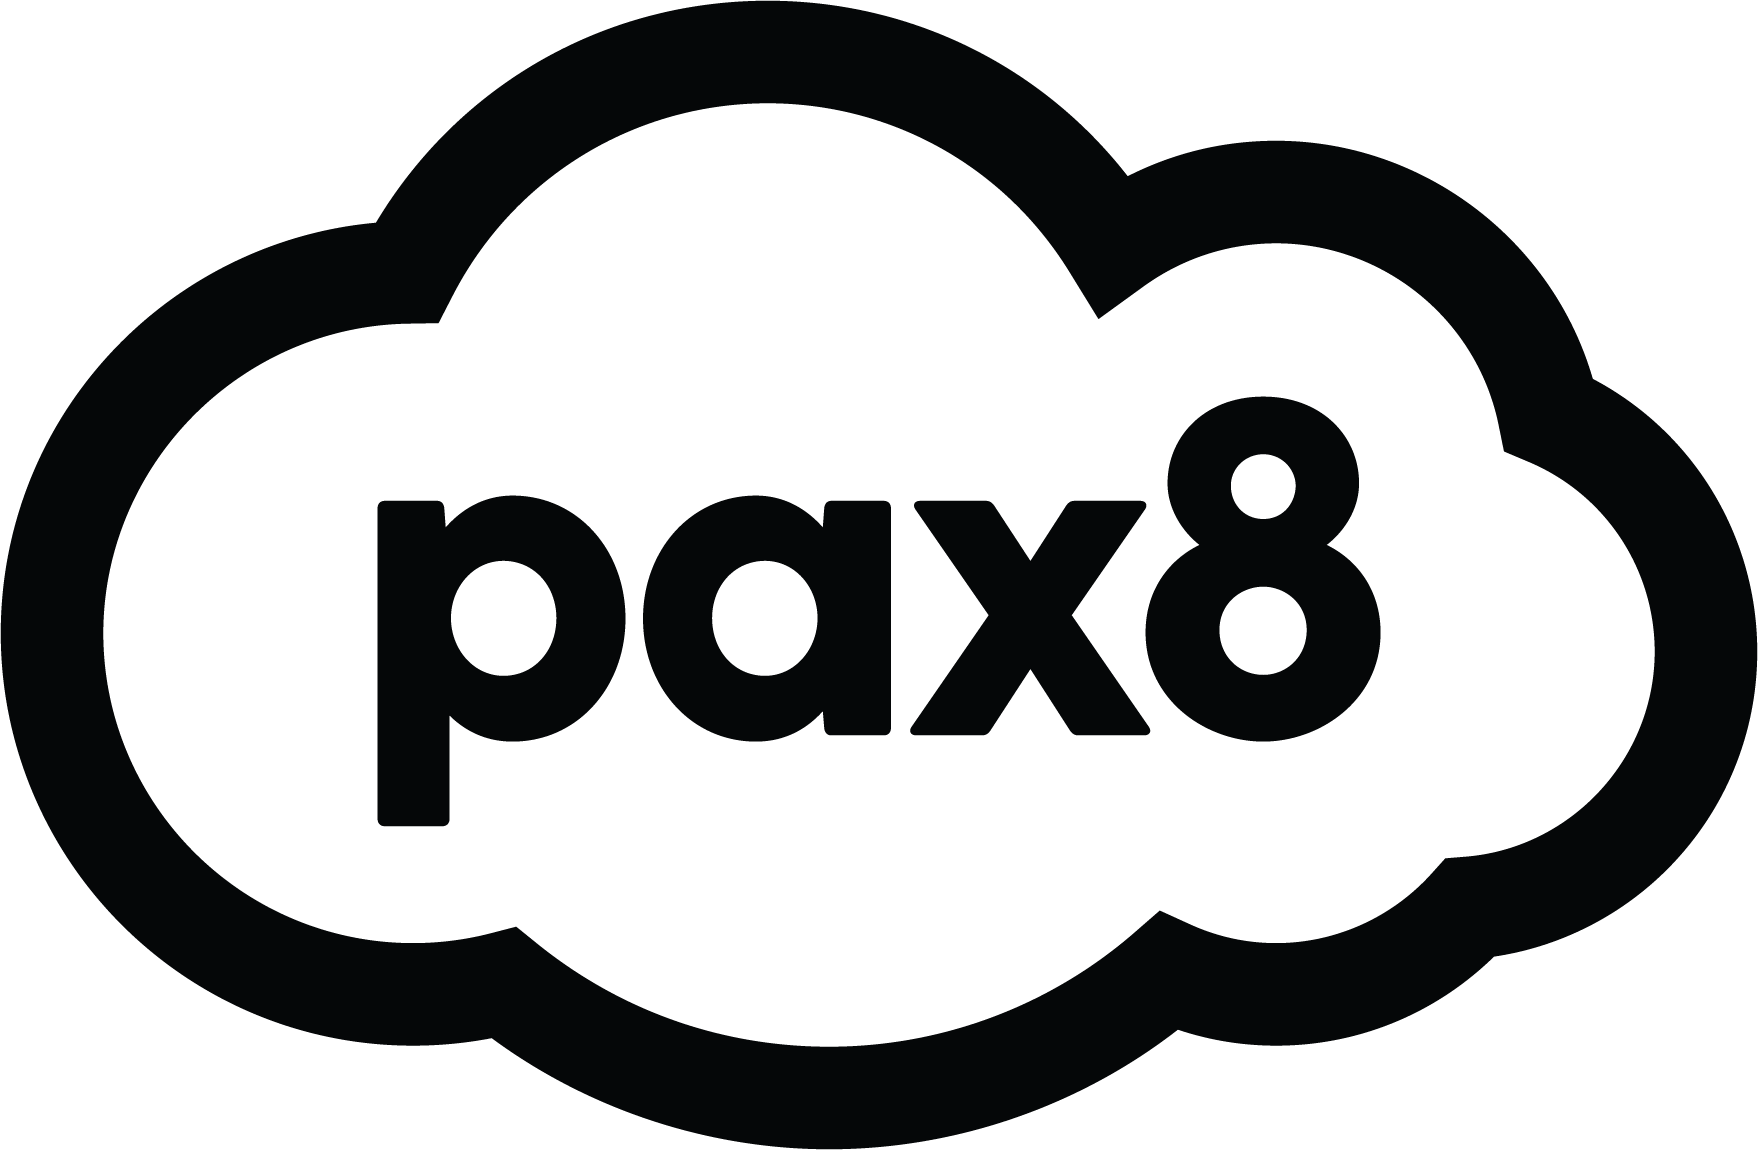 Pax8 Logo